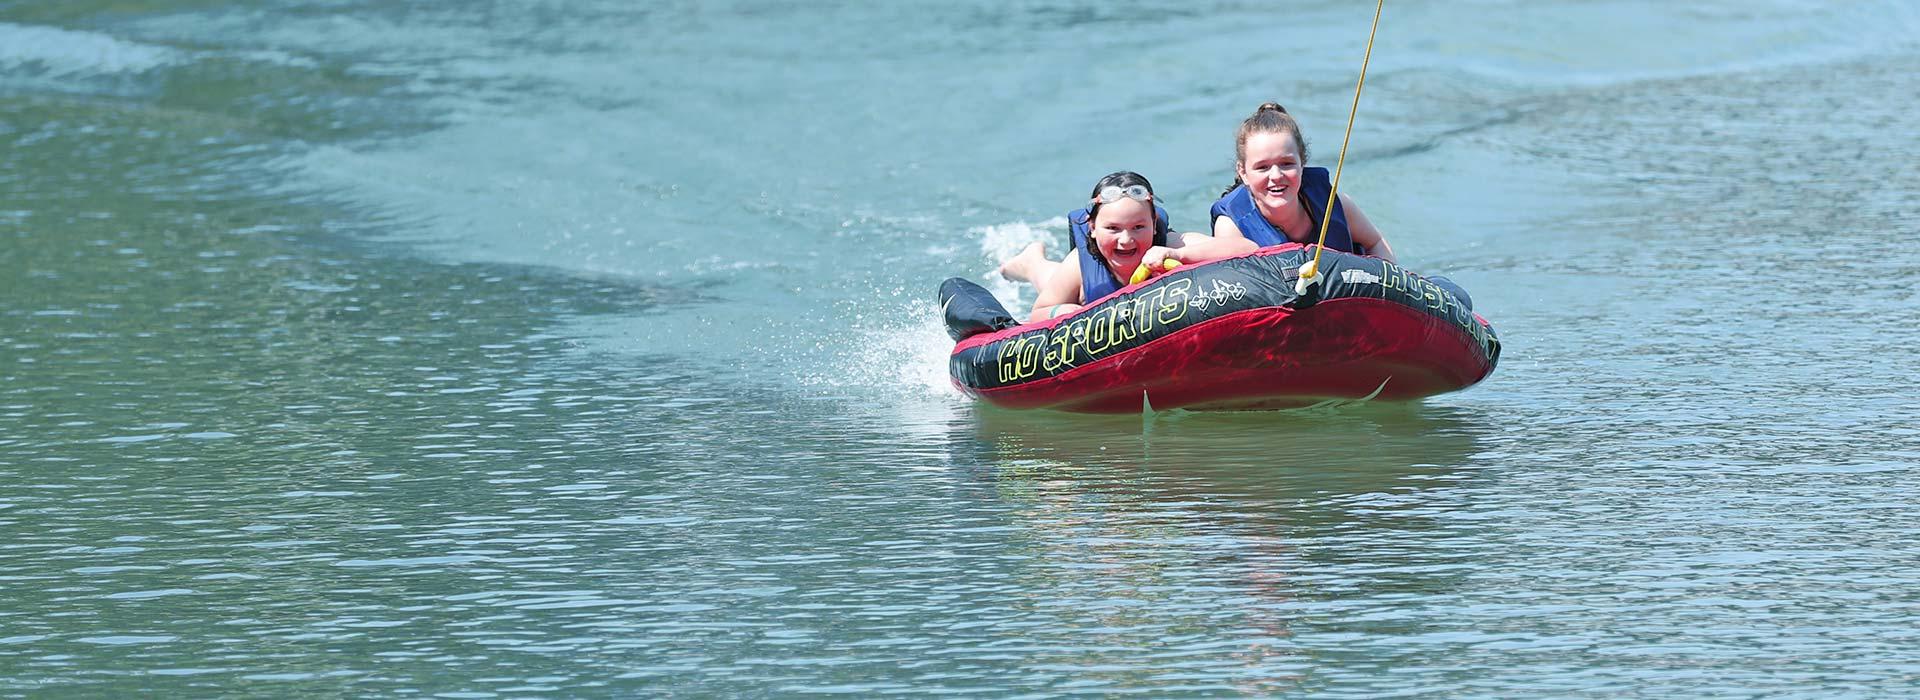 children on inner tube on the water